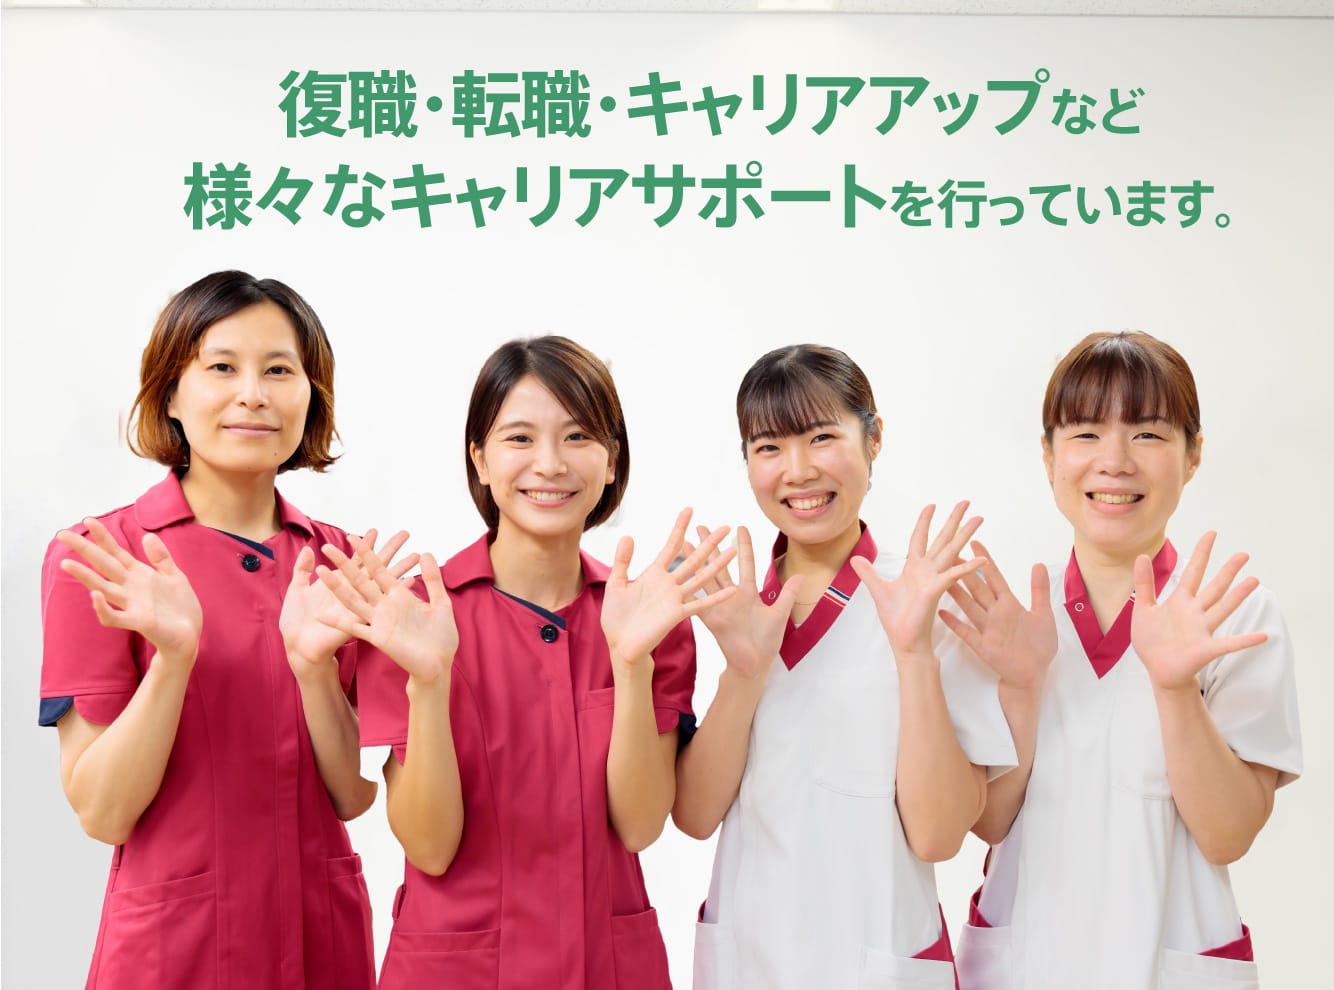 あなたと武田病院グループとの架け橋として働きたい人・働く人をこころを込めてサポートします。